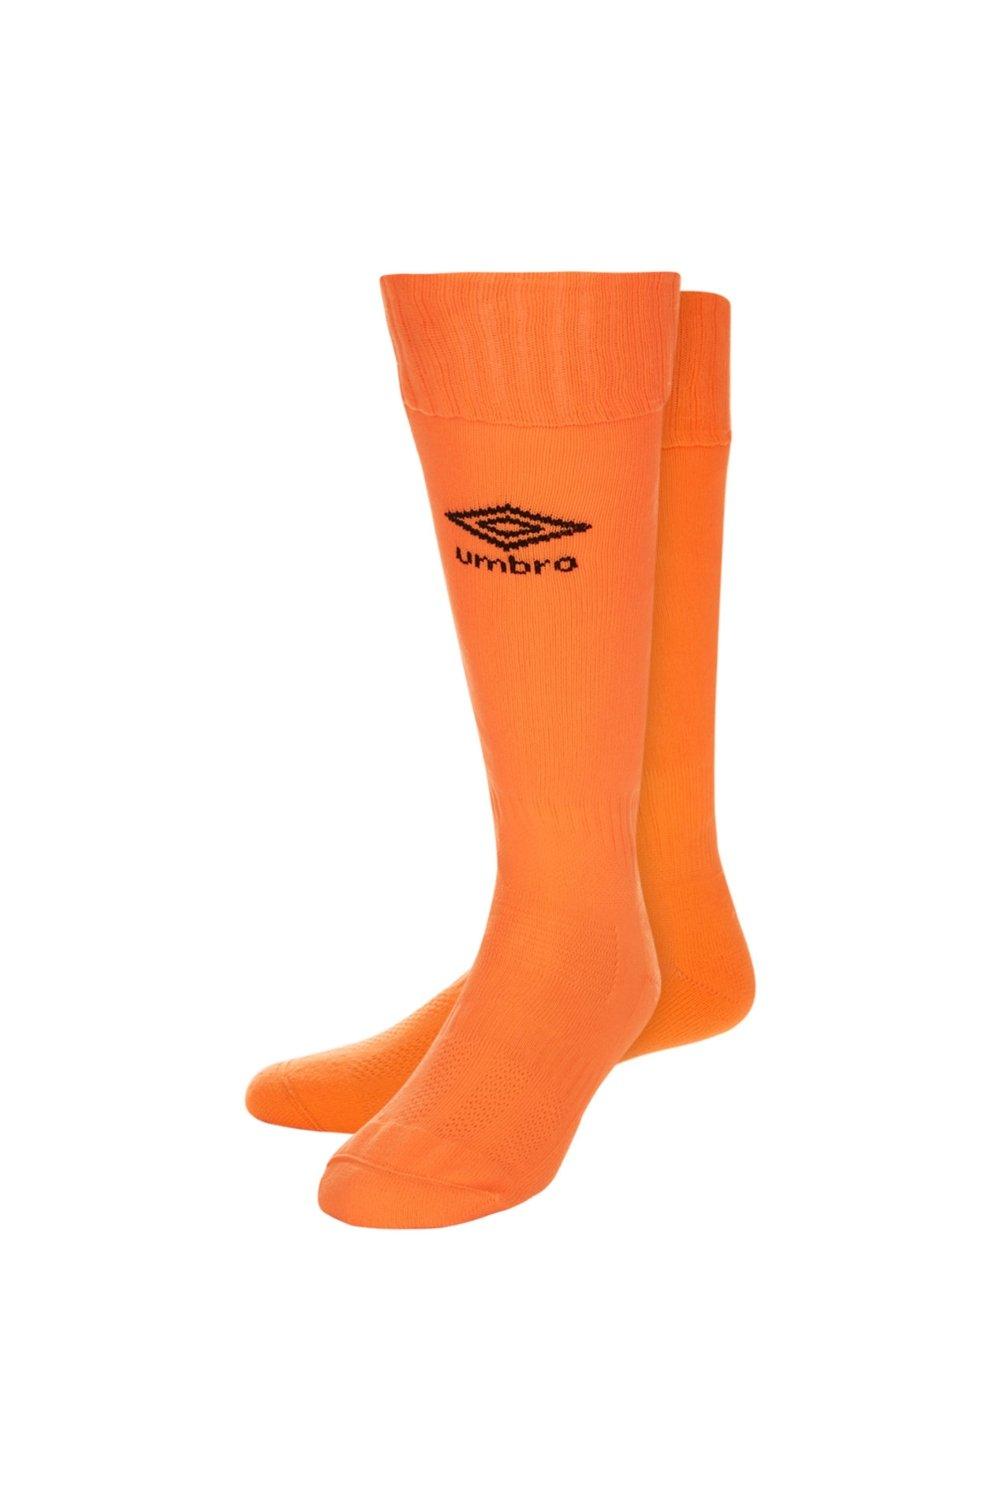 Футбольные носки Classico Umbro, оранжевый